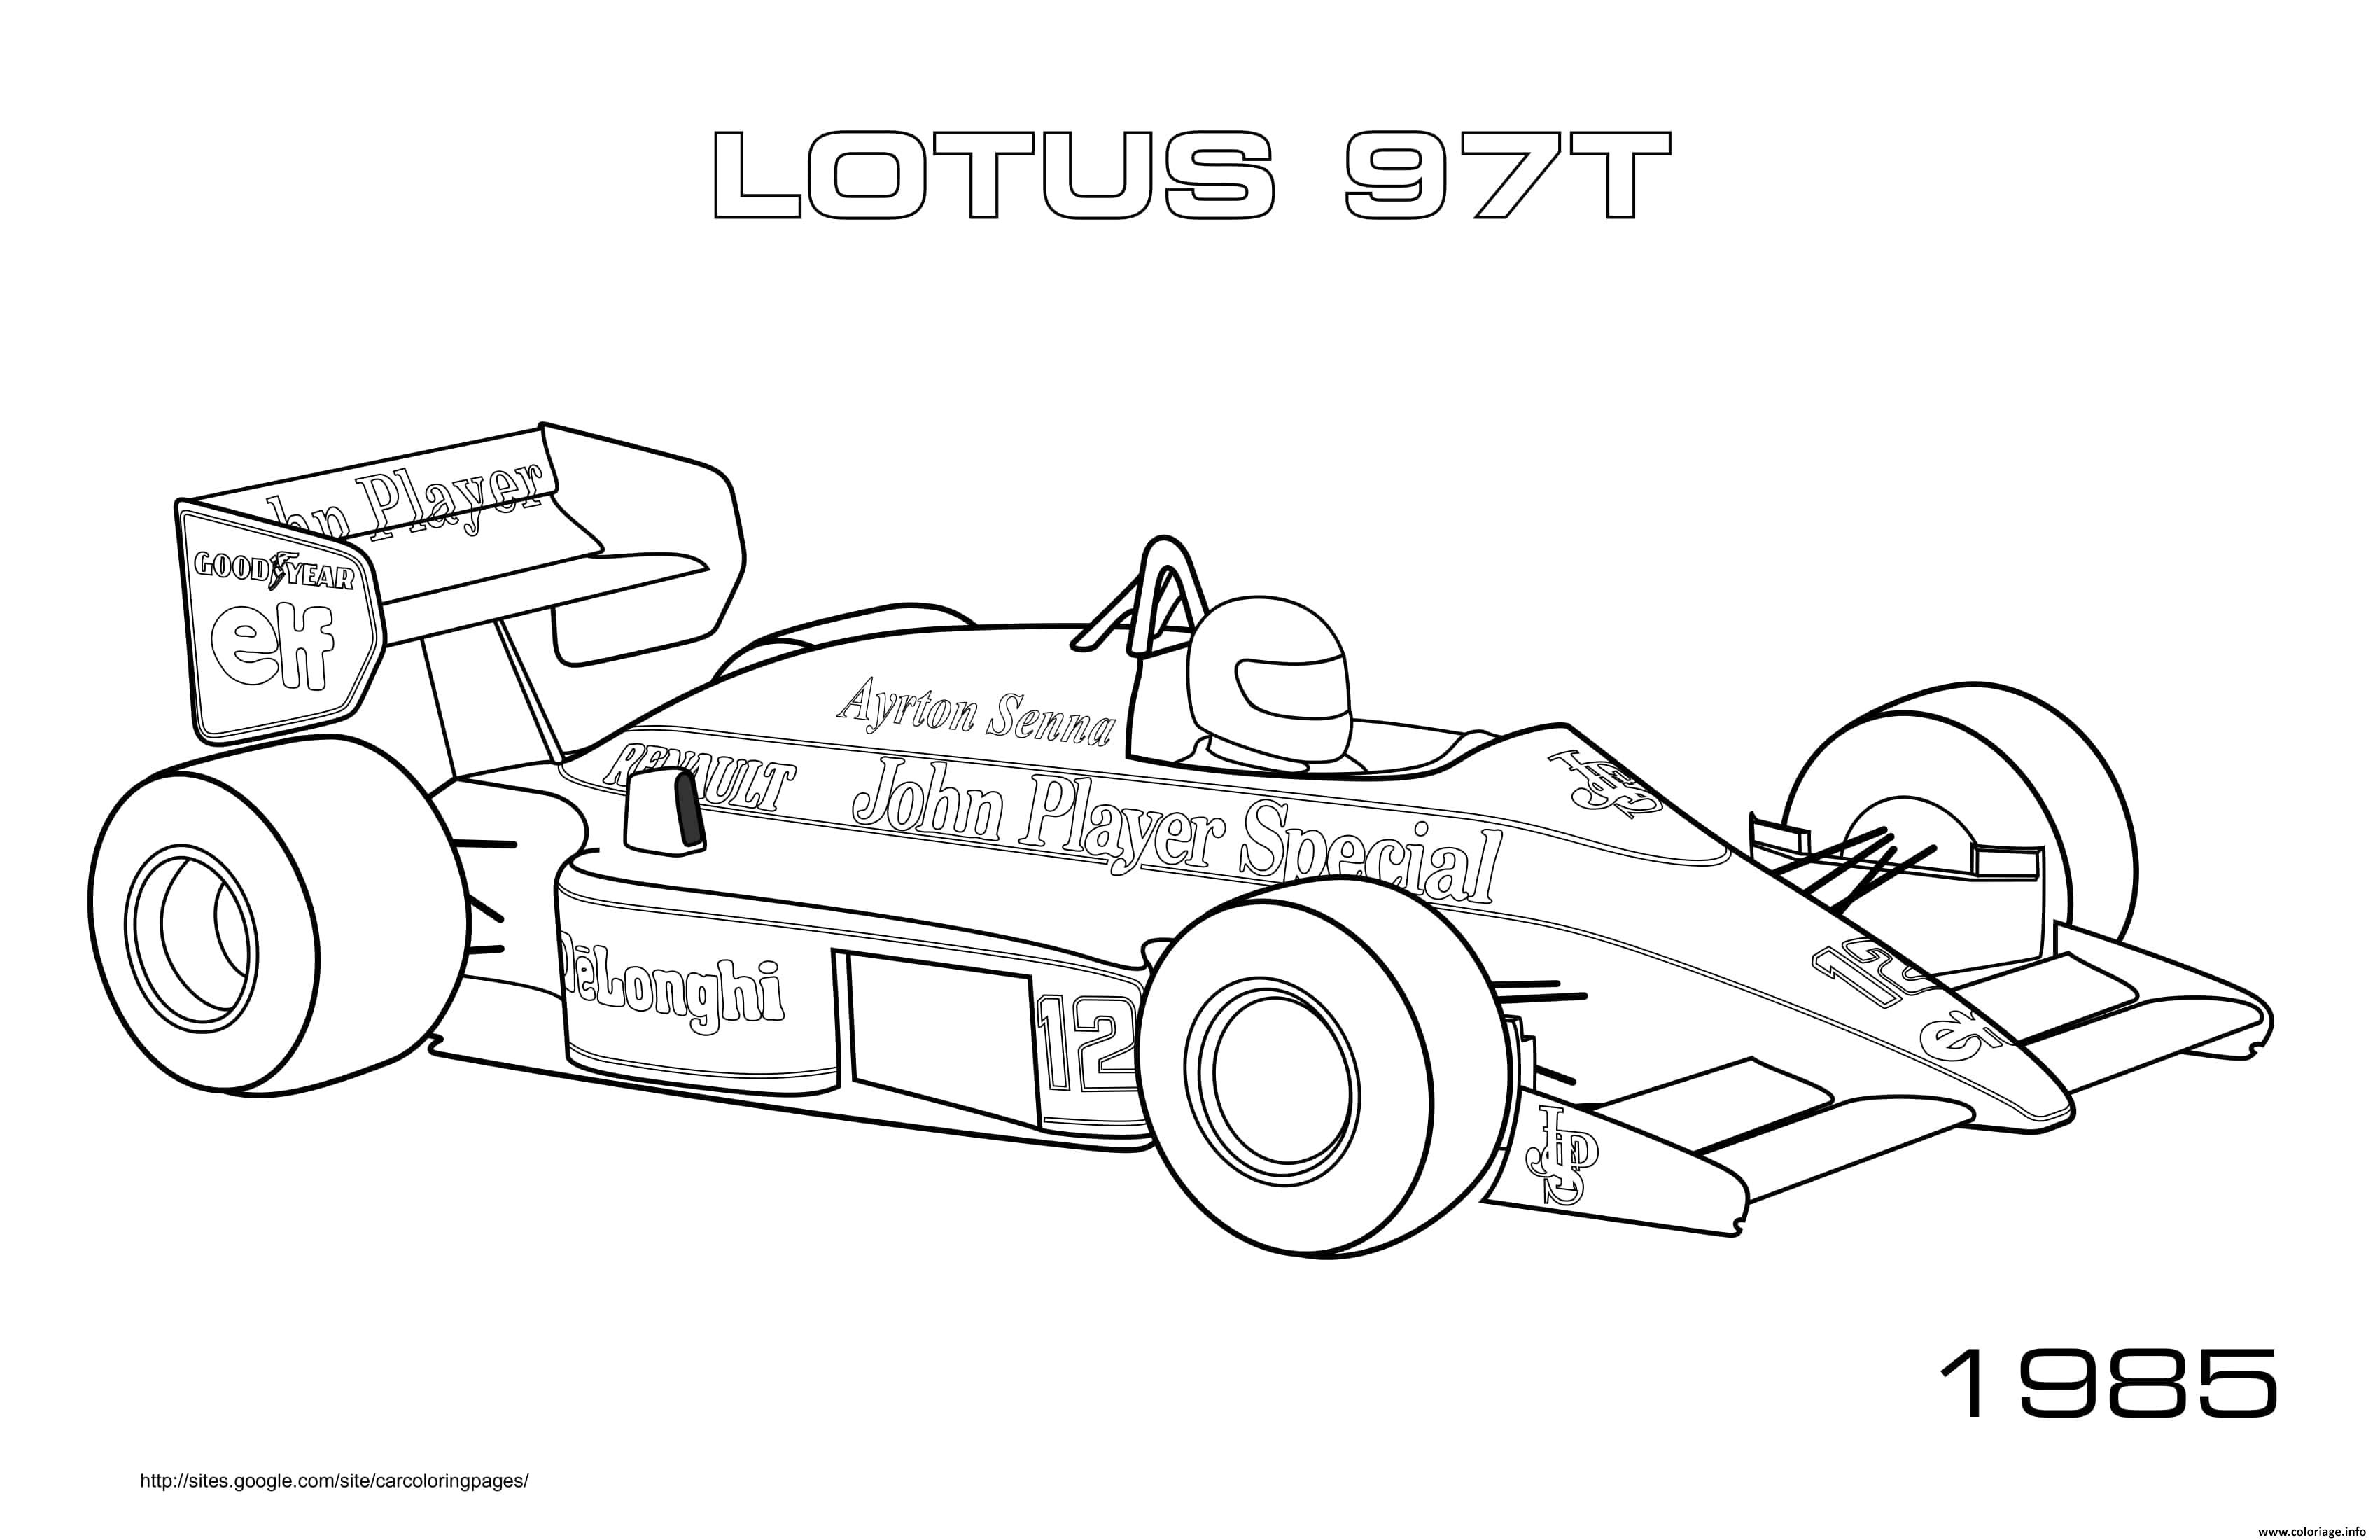 Dessin F1 Lotus 97t 1985 Coloriage Gratuit à Imprimer